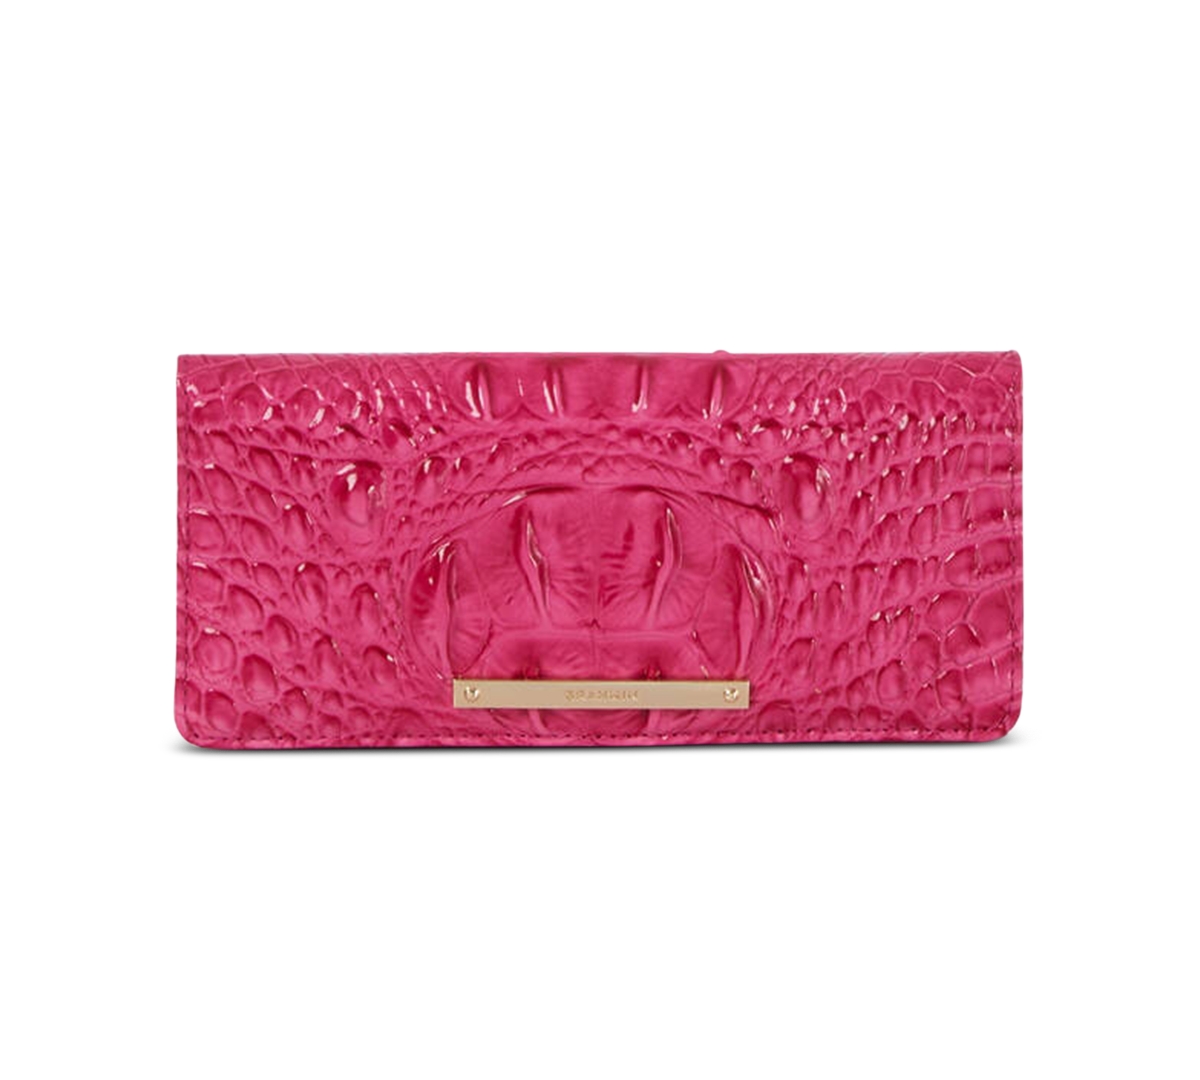 Brahmin Ady Leather Wallet In Pink